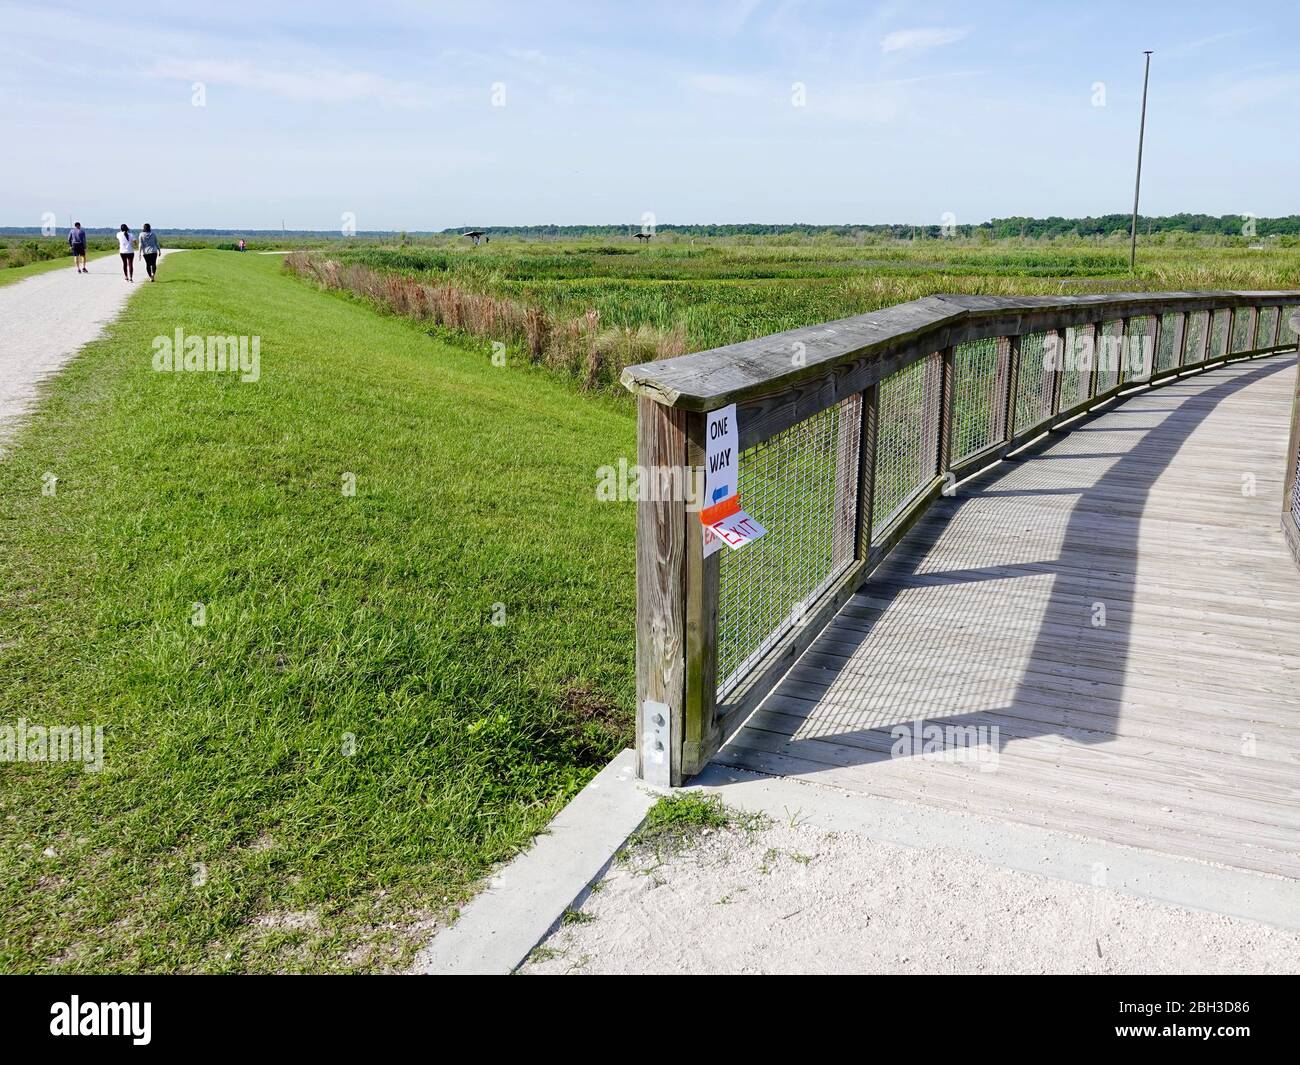 I residenti praticano le distanze sociali sui sentieri di un parco Sweetwater Wetlands, mentre il personale organizza le indicazioni per il traffico pedonale a senso unico. Foto Stock